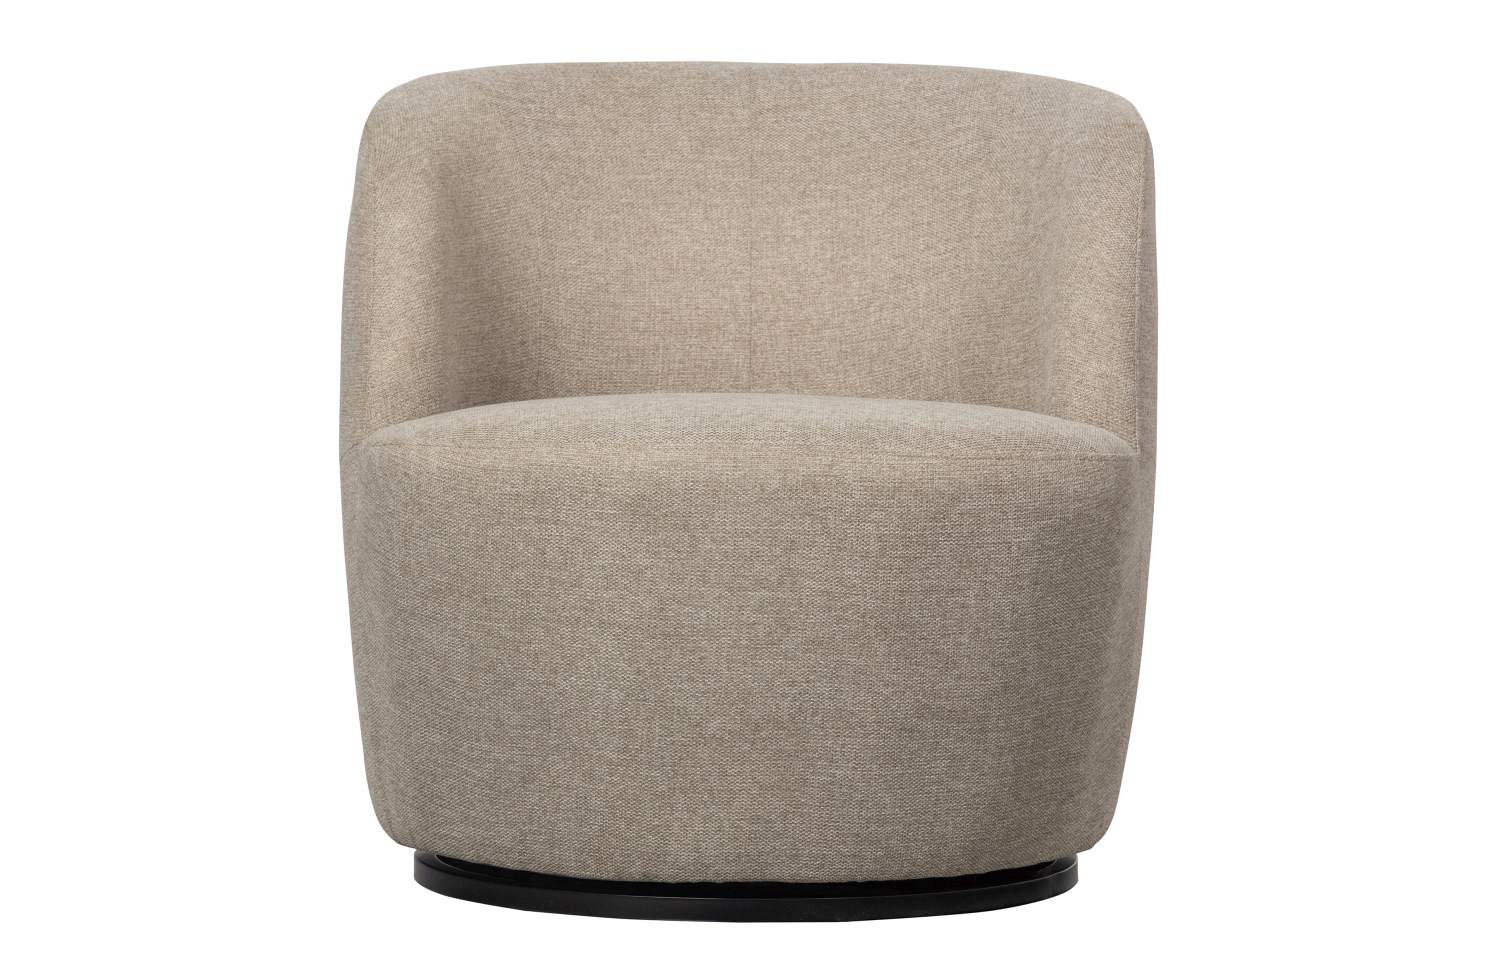 Der Drehsessel Serra überzeugt mit seinem modernen Design. Gefertigt wurde er aus Webstoff, welcher einen Sand Farbton besitzt. Das Gestell ist aus Metall und  hat eine schwarze Farbe. Die Sitzhöhe des Sessels beträgt 42 cm.